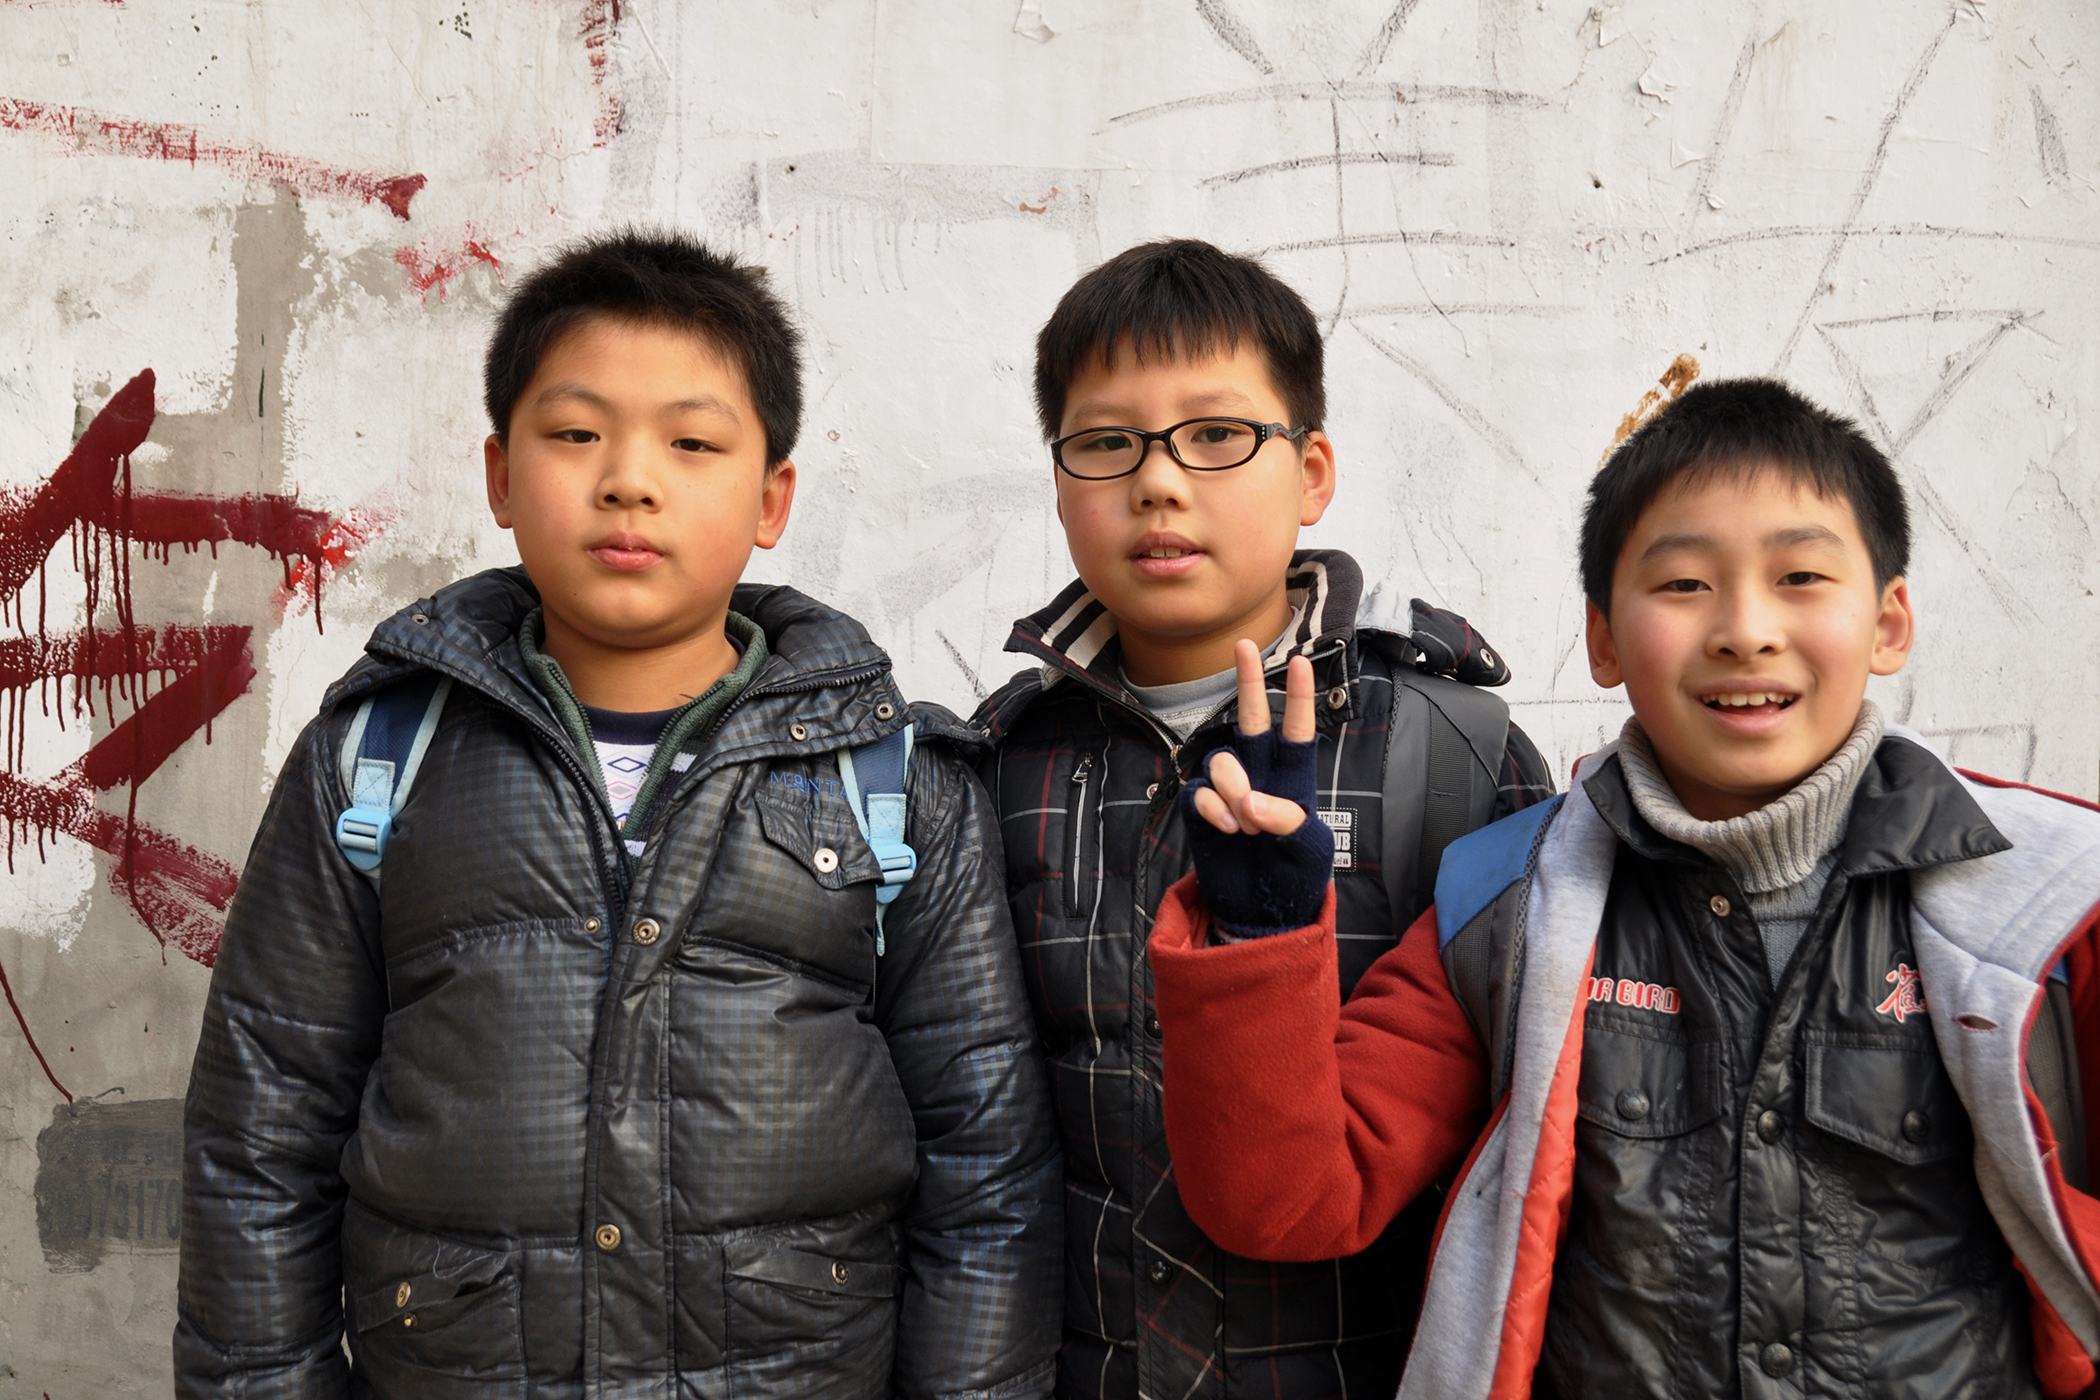  Schoolboys, Wuhan 